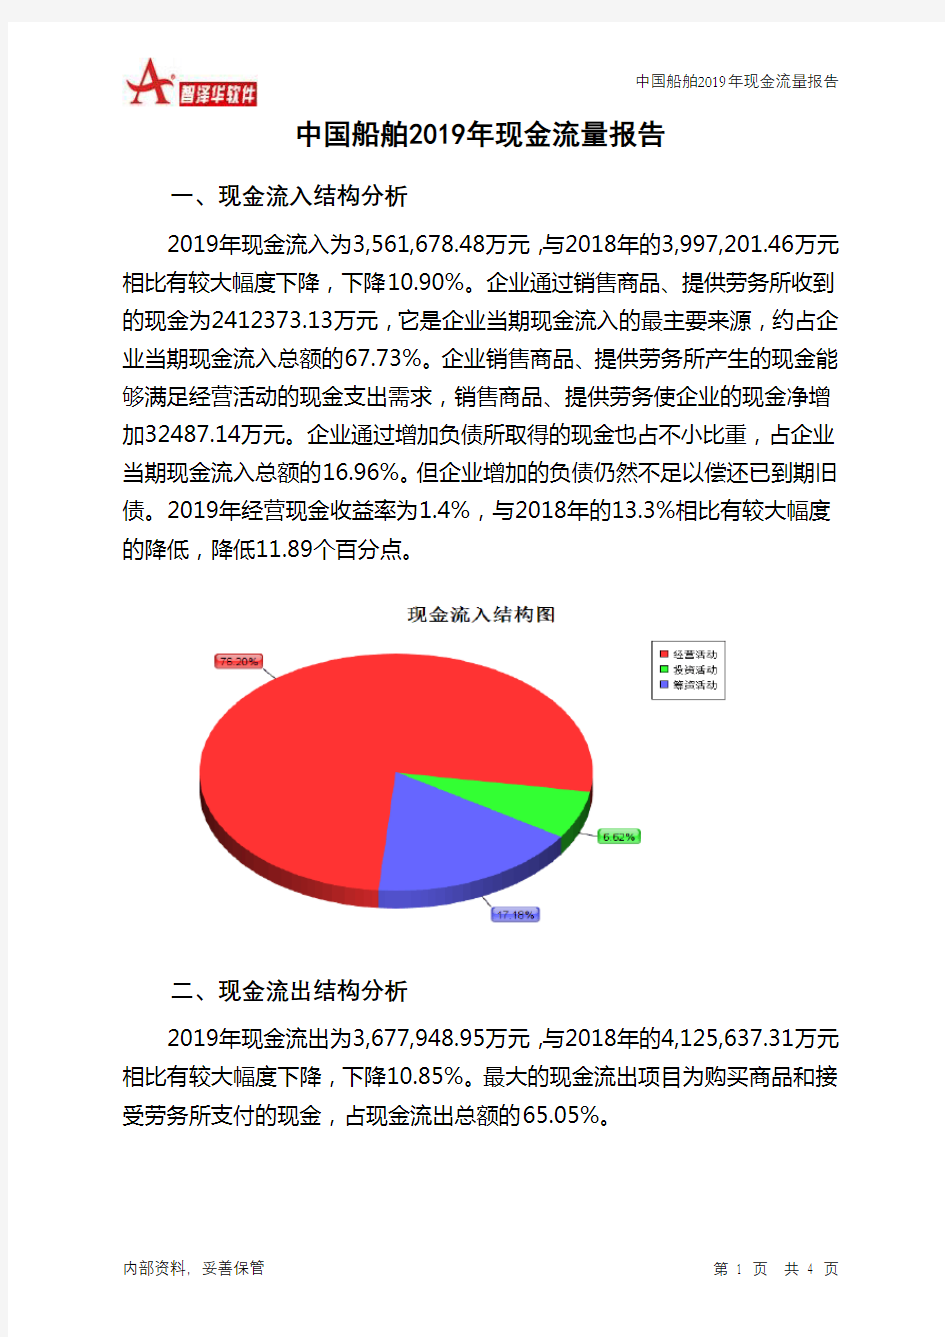 中国船舶2019年现金流量报告